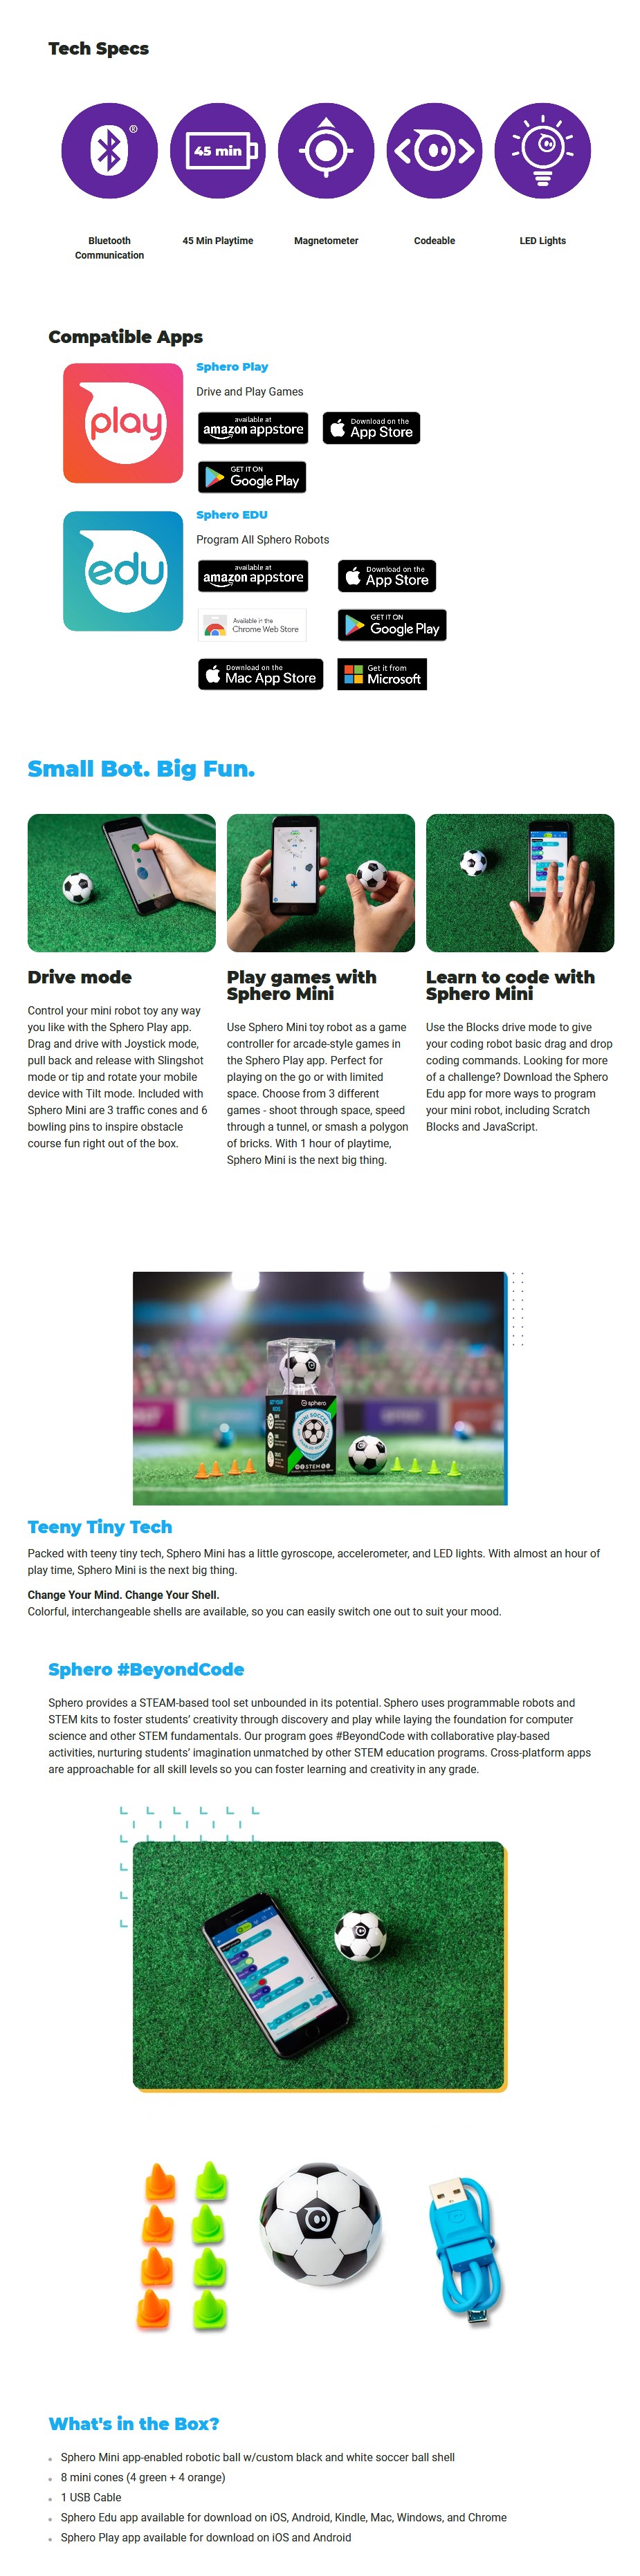 Sphero Mini Soccer - App-Enabled Robotic Ball M001SRW Details